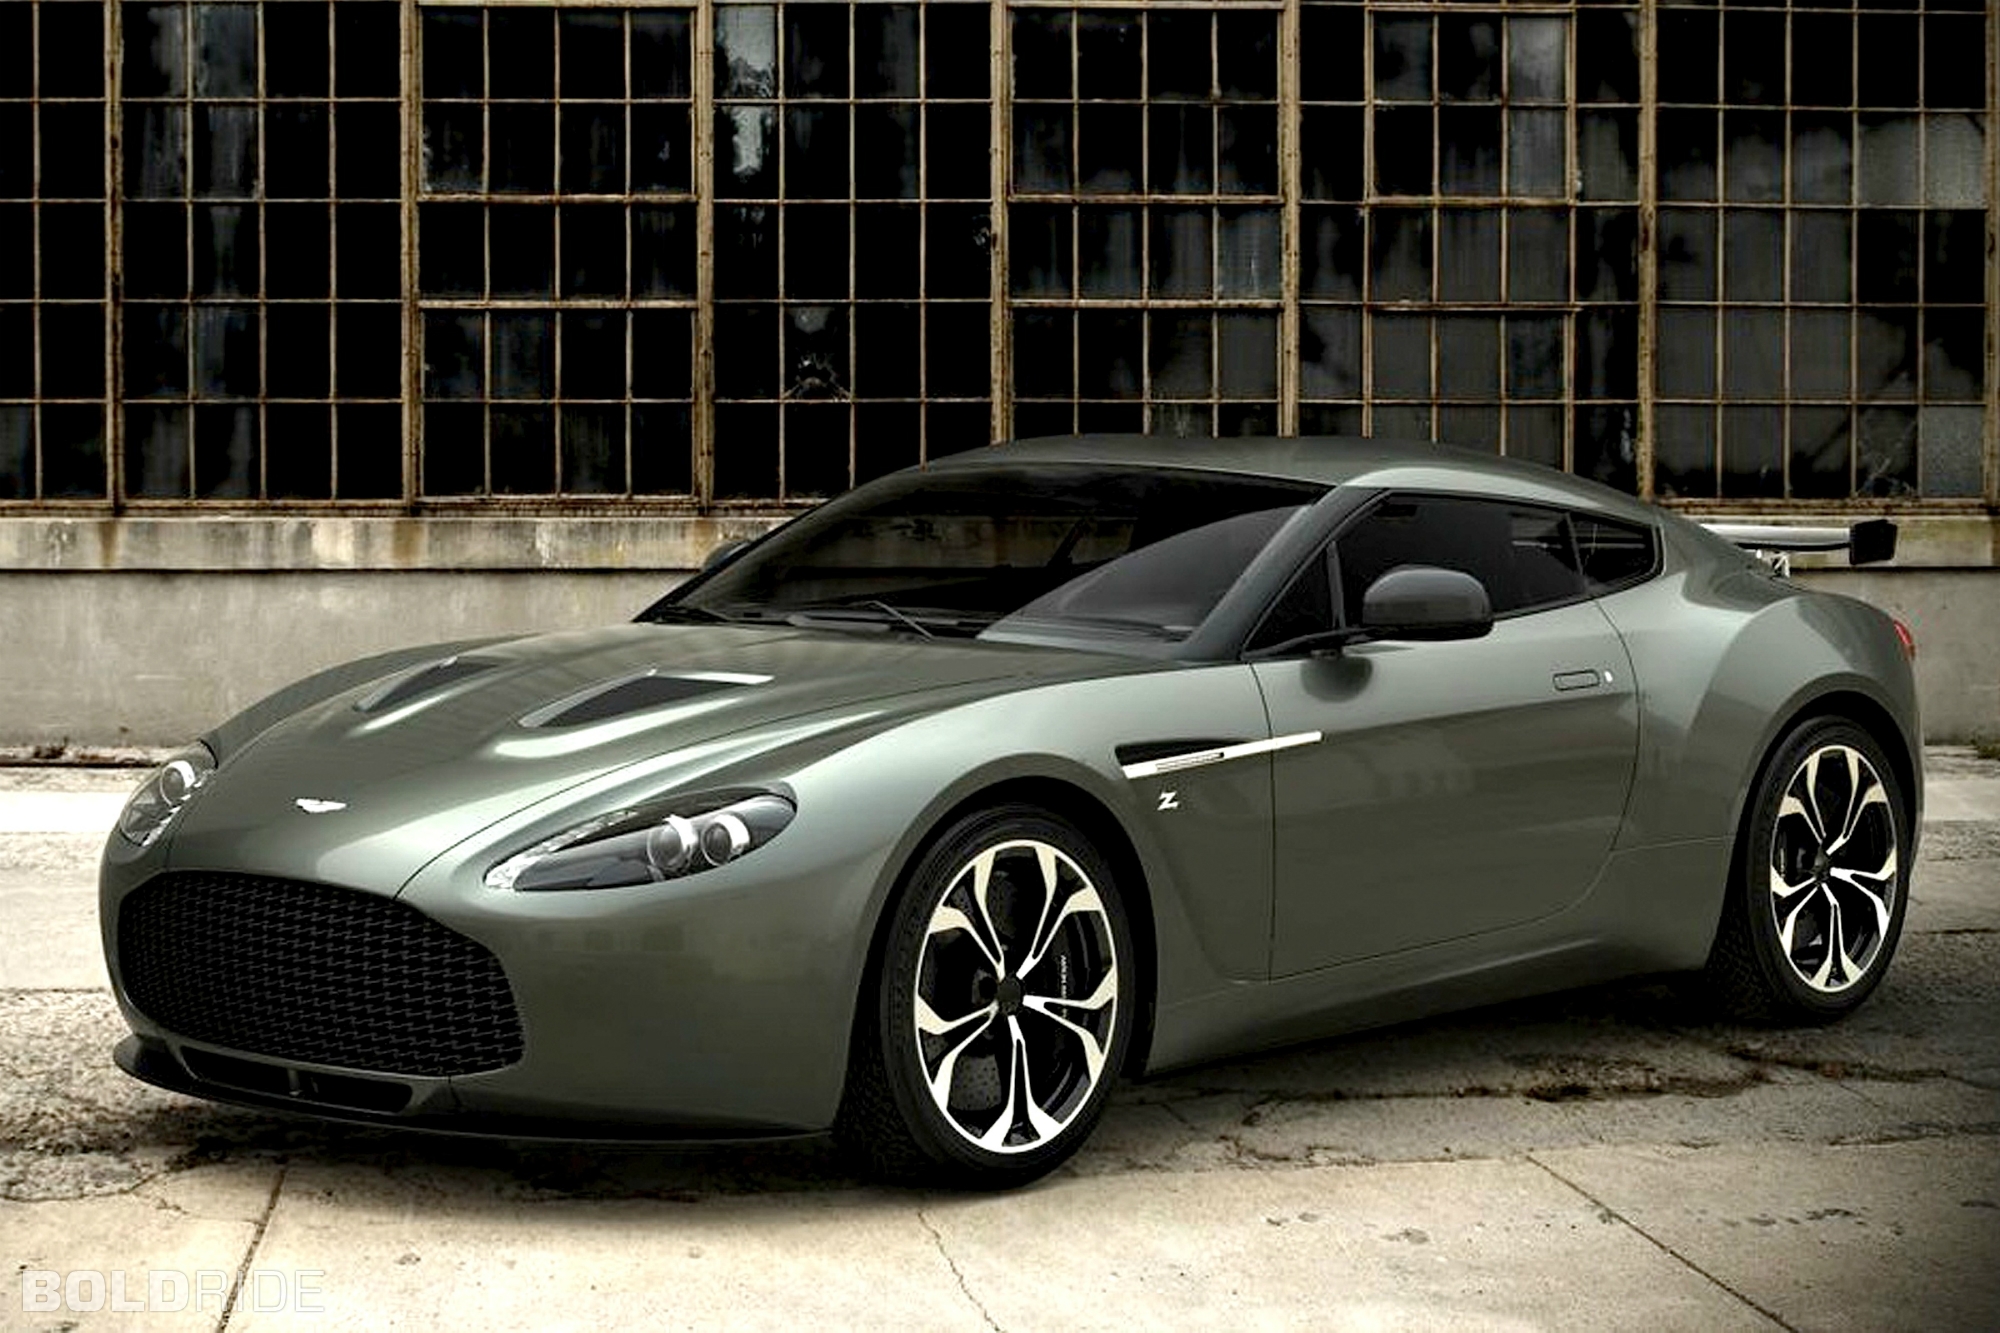 2000x1333 > Aston Martin V12 Zagato Wallpapers